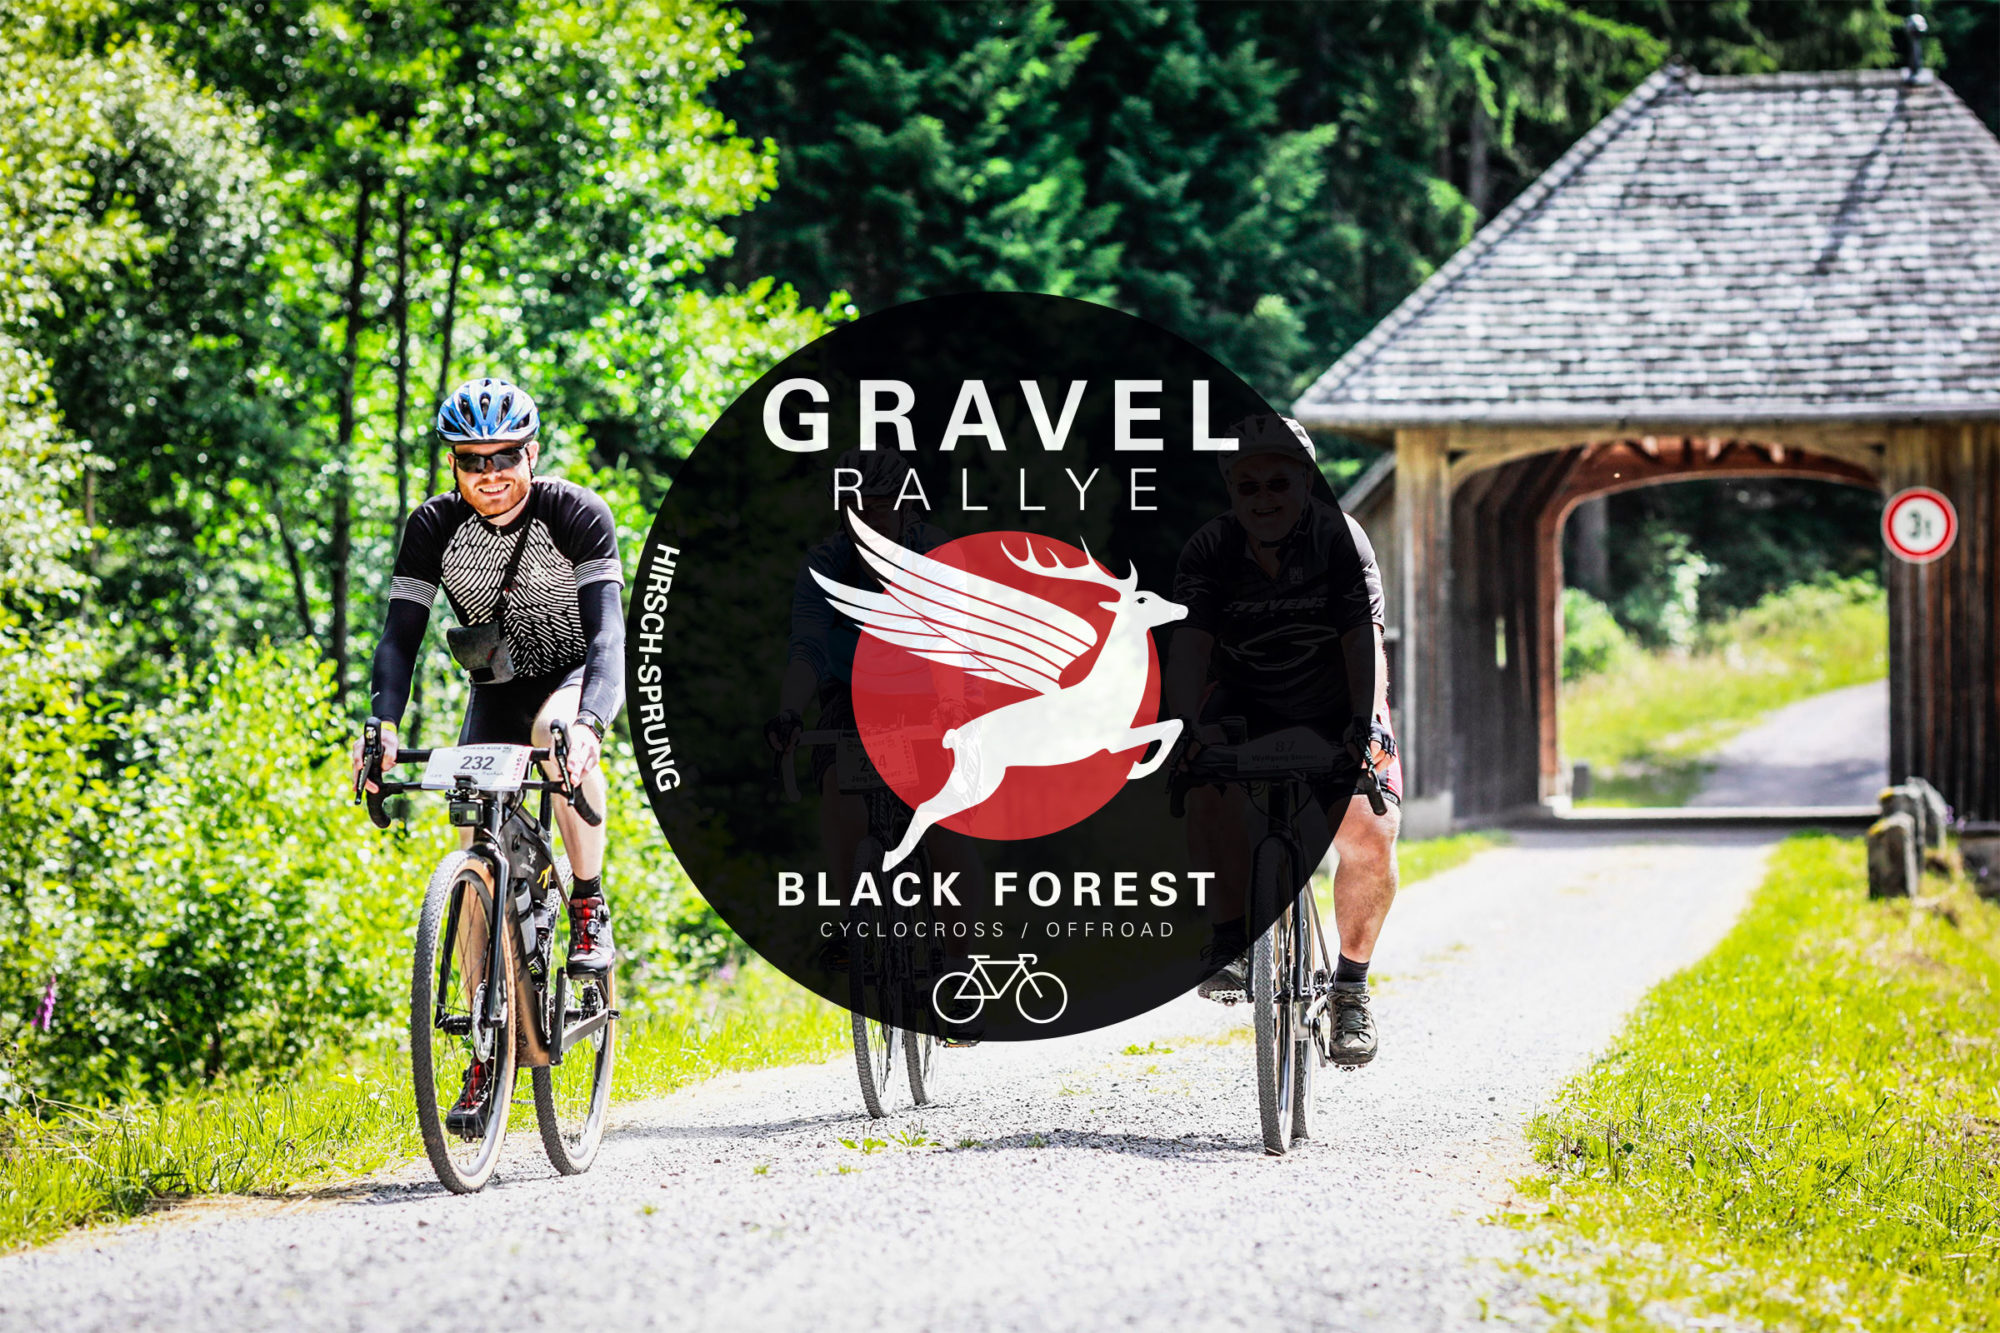 Gravel Rallye Black Forest 2020